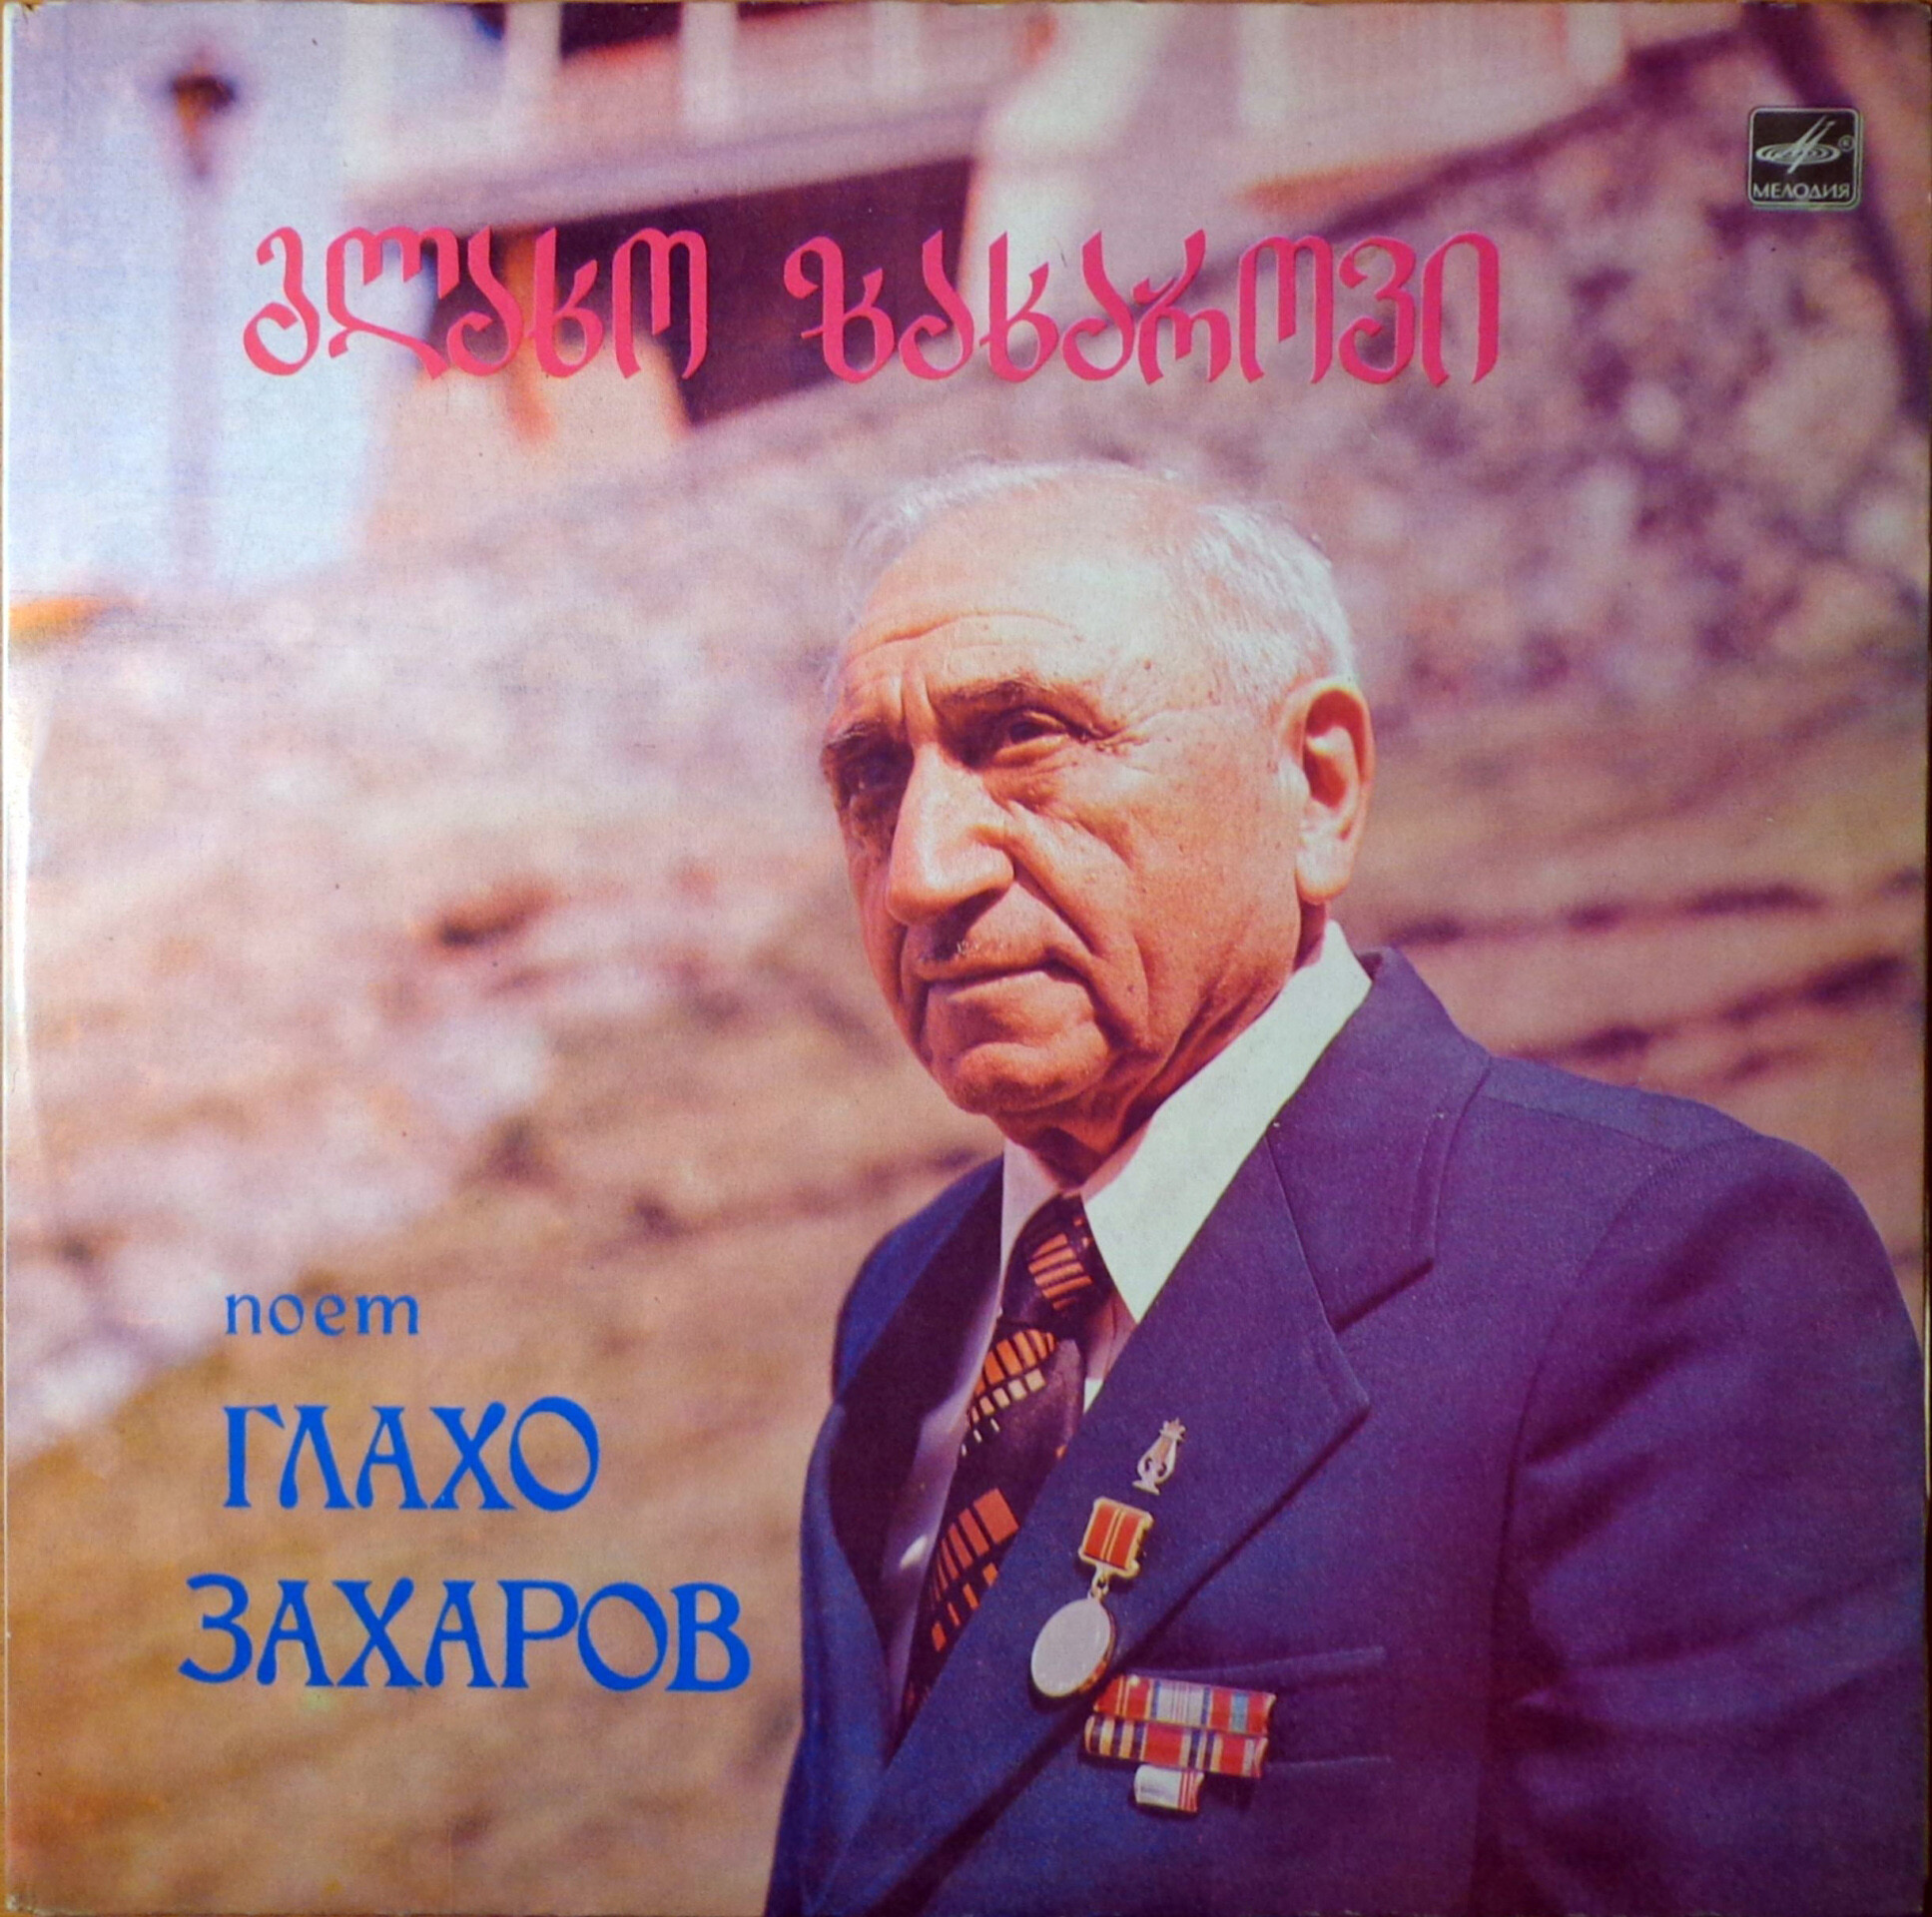 Глахо Захаров поёт грузинские народные песни